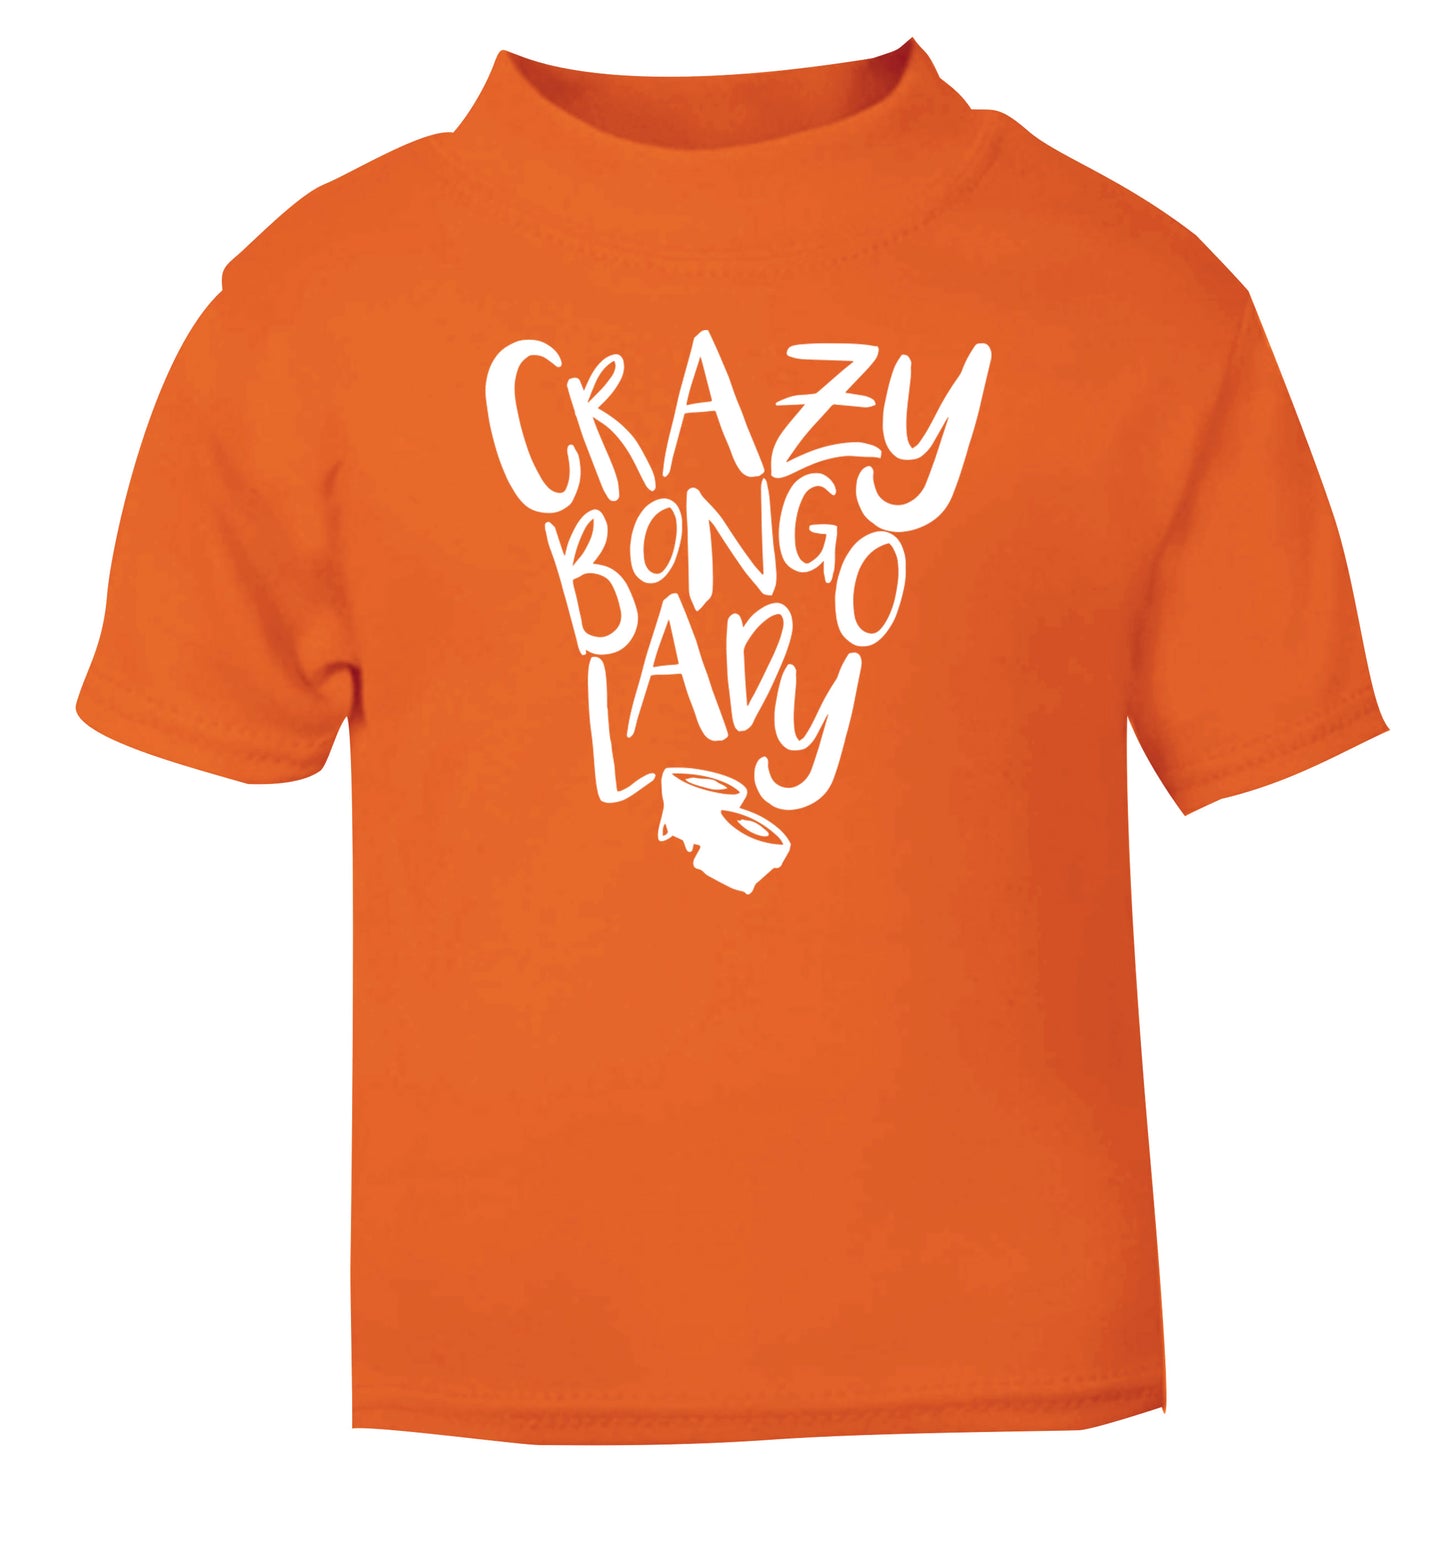 Crazy bongo lady orange Baby Toddler Tshirt 2 Years